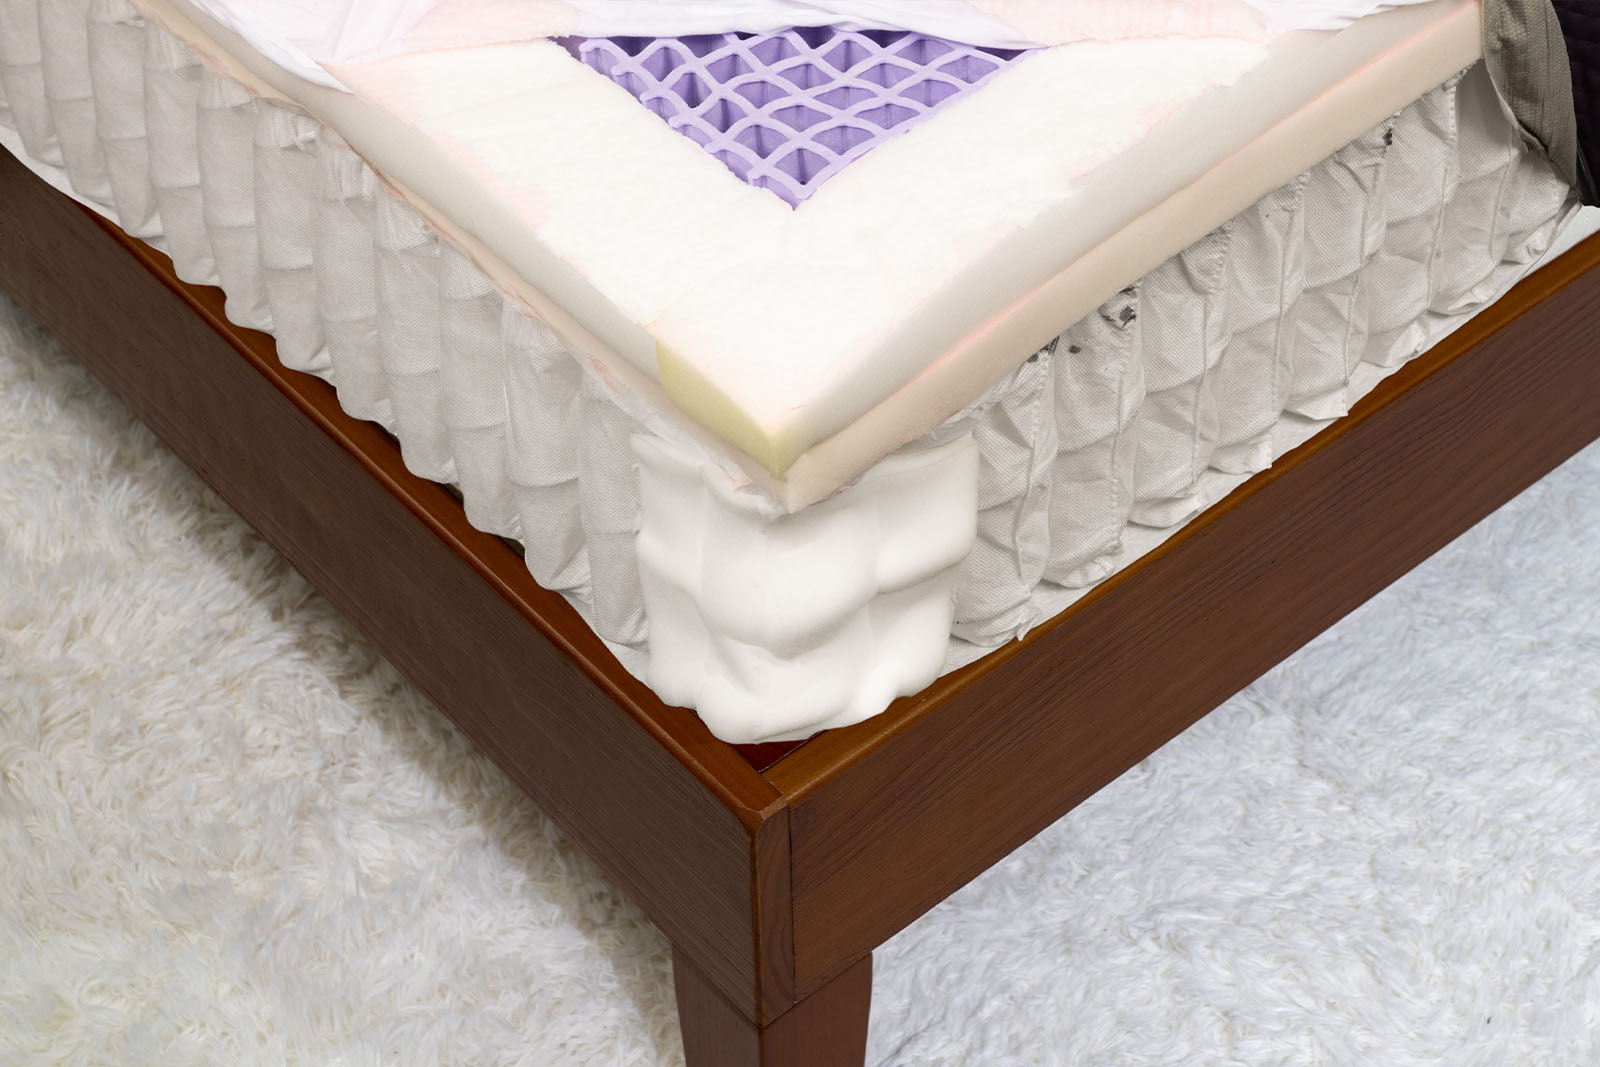 Purple Hybrid Restore mattress layers